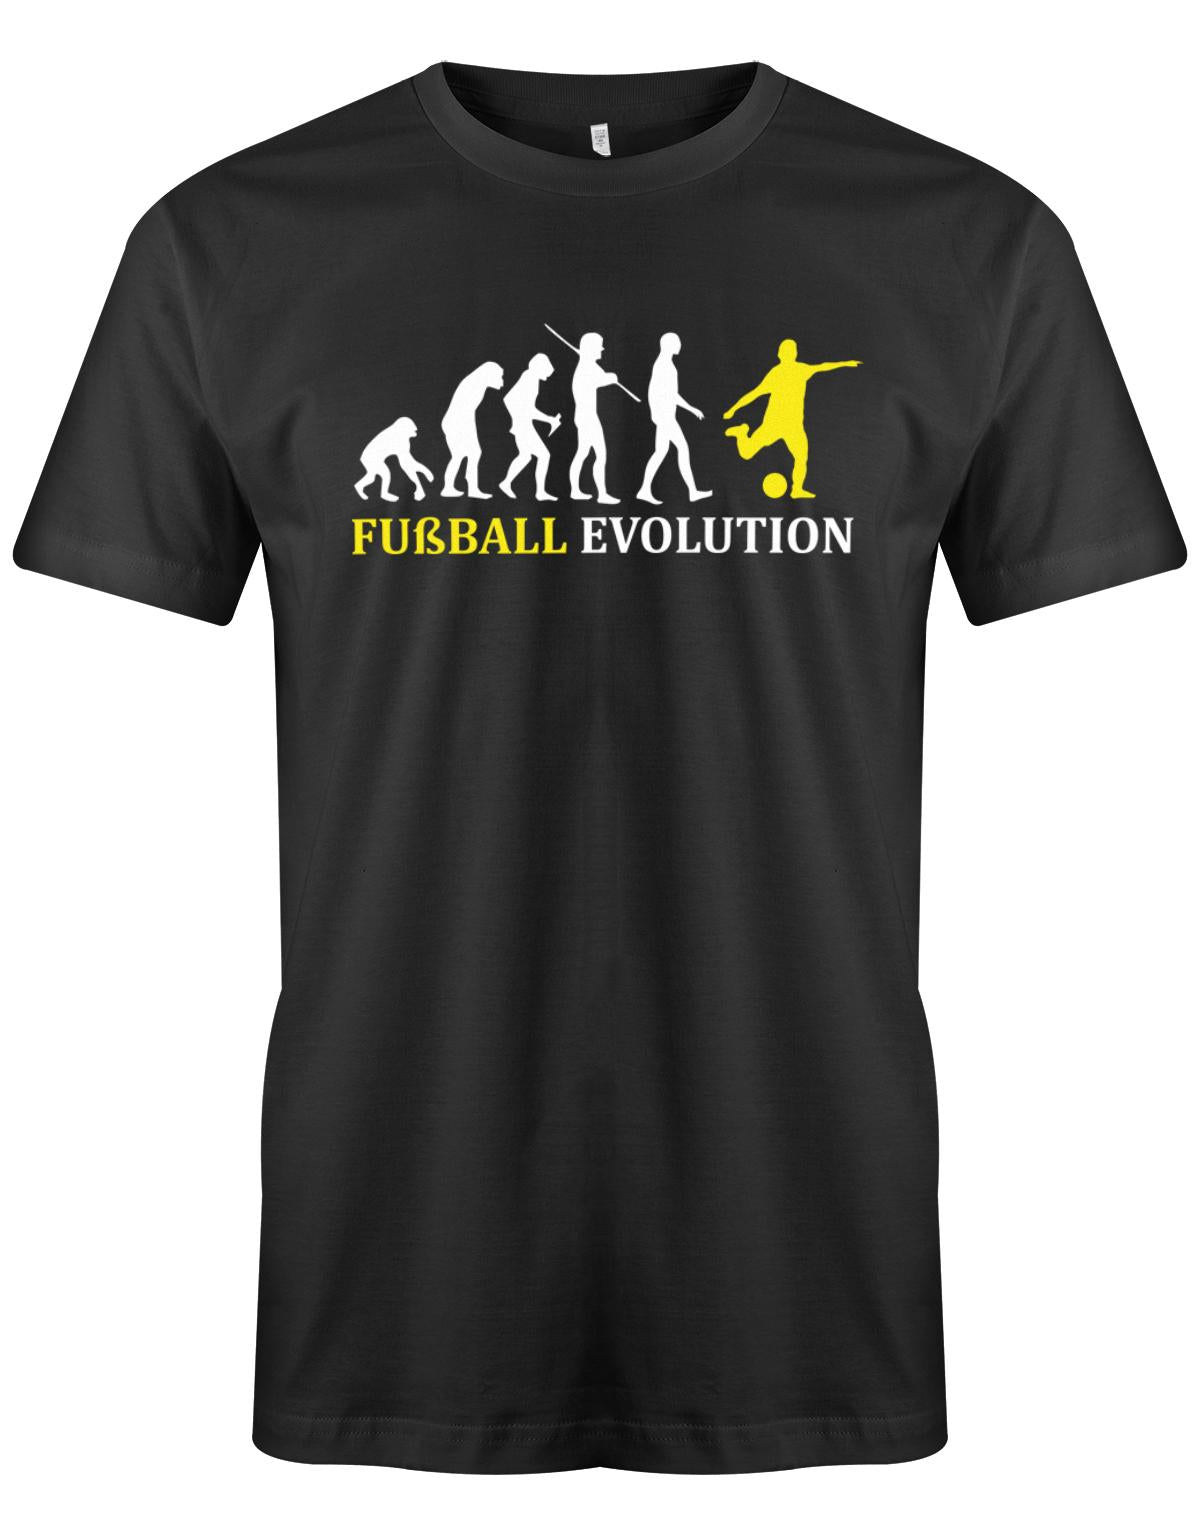 Fussball-Evolution-Herren-Shirt-Schwarz-Gelb